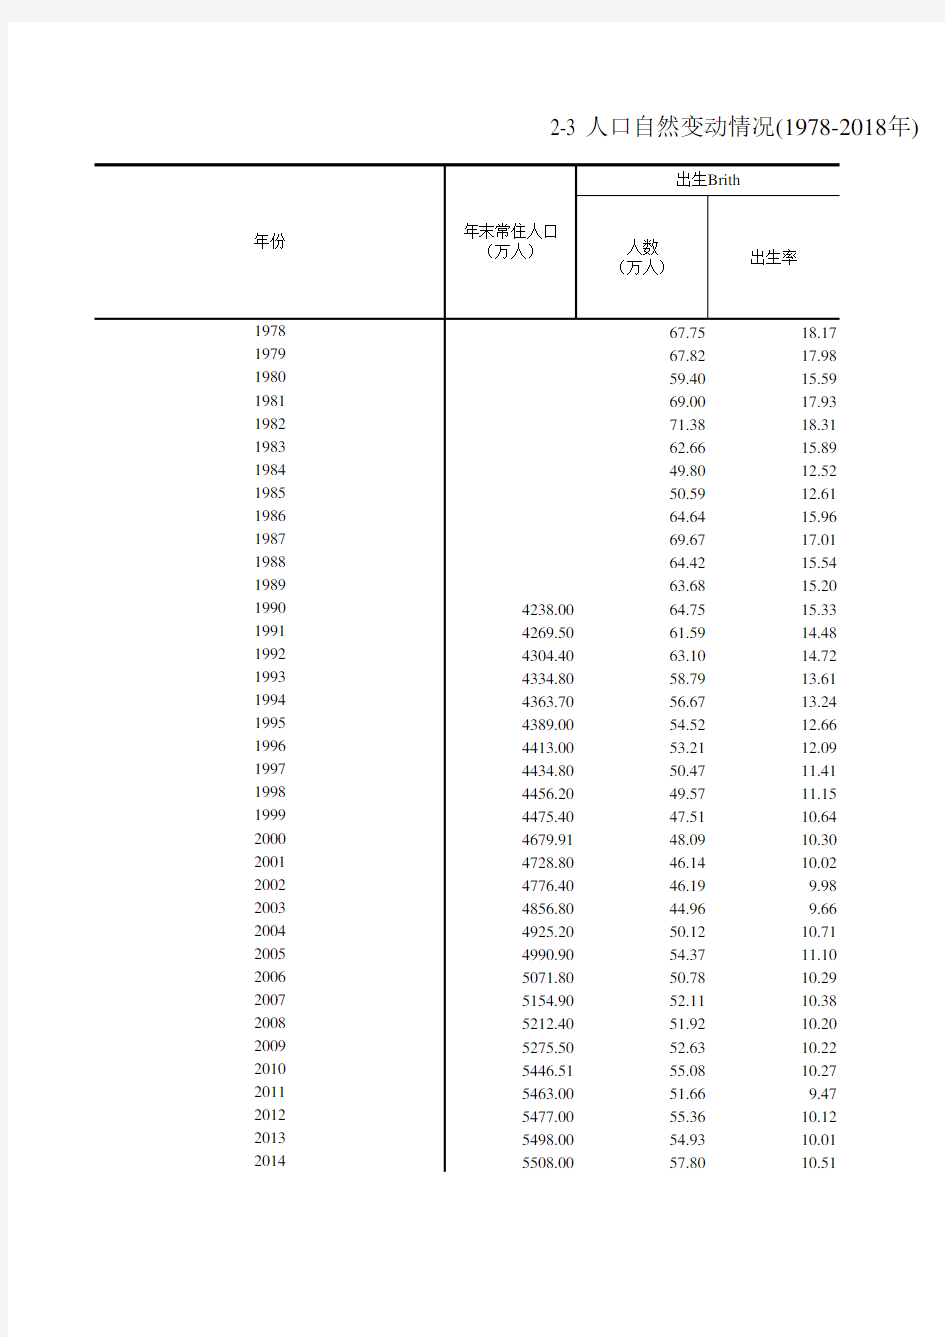 浙江统计年鉴宏观经济数据：2-3 人口自然变动情况(1978-2018年)